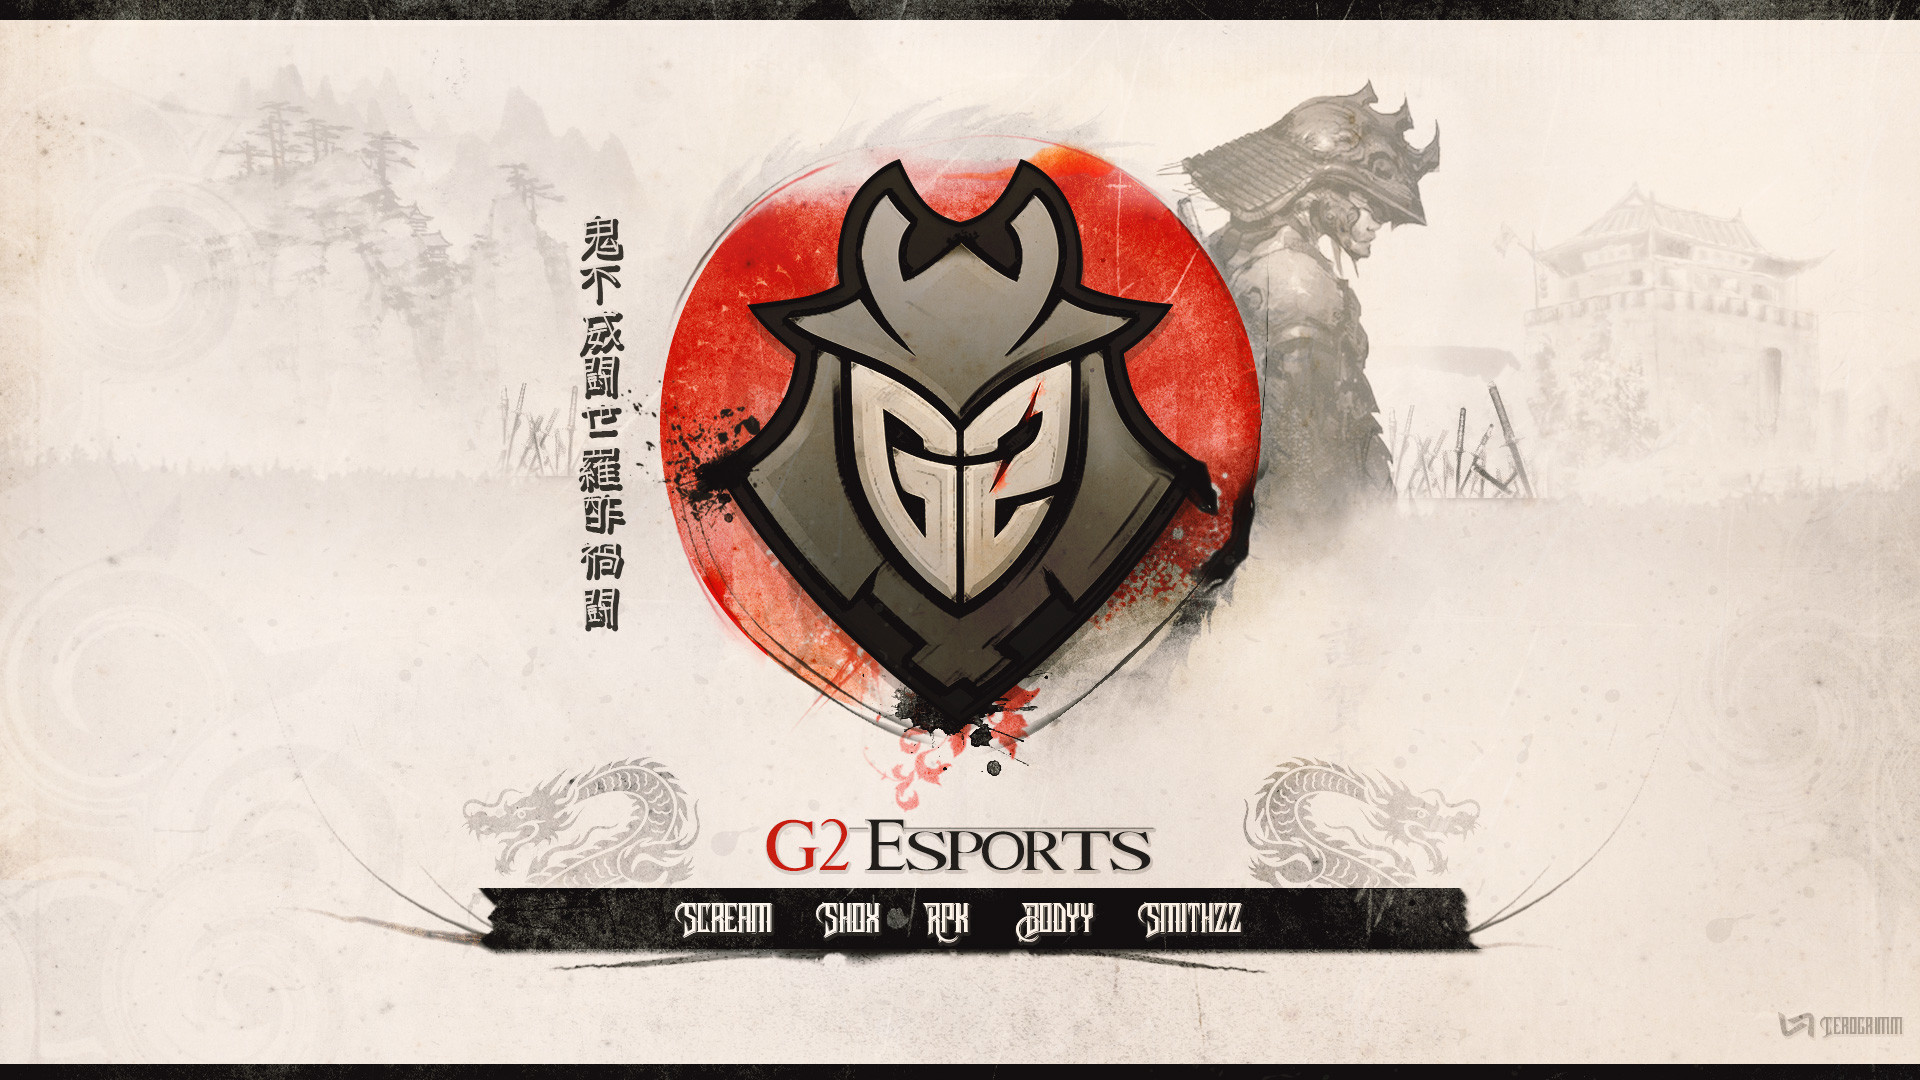 G2 CS:GO wallpaper by Cerogrimm